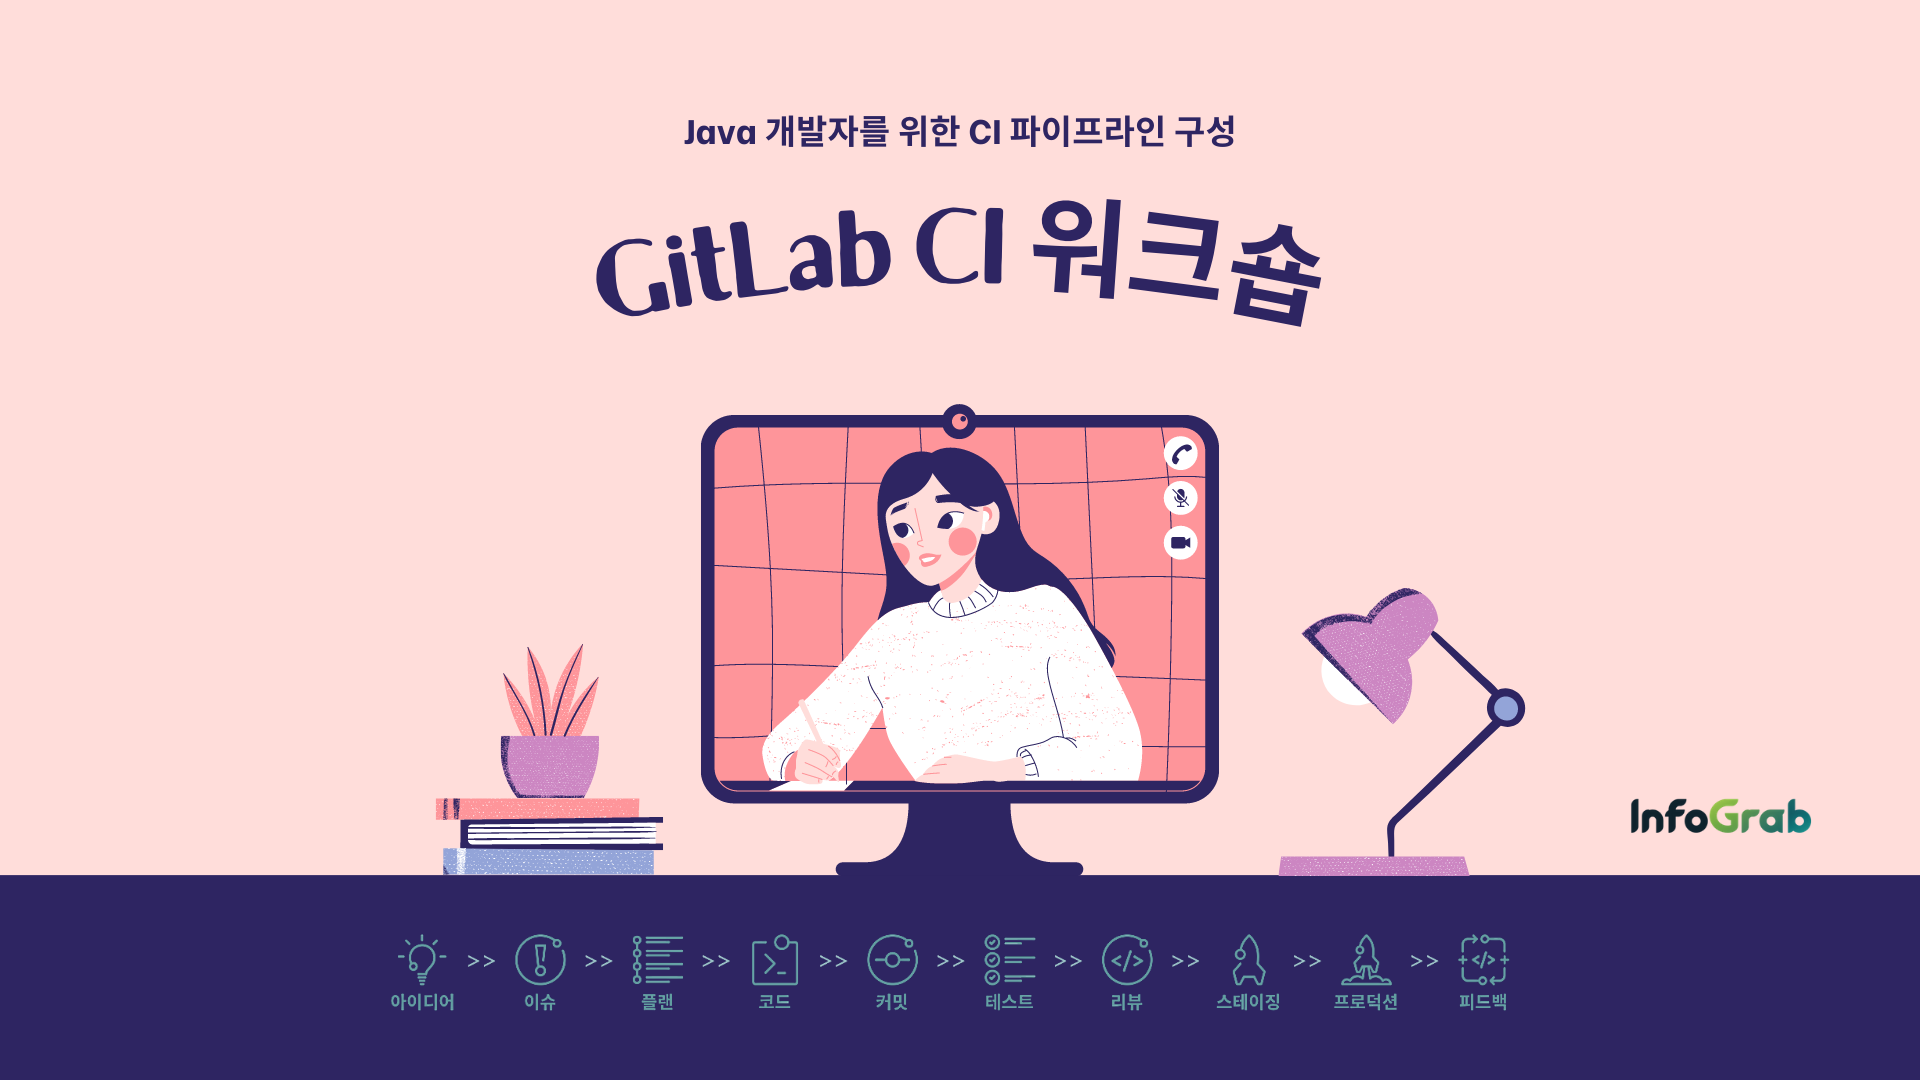 GitLab CI 워크숍